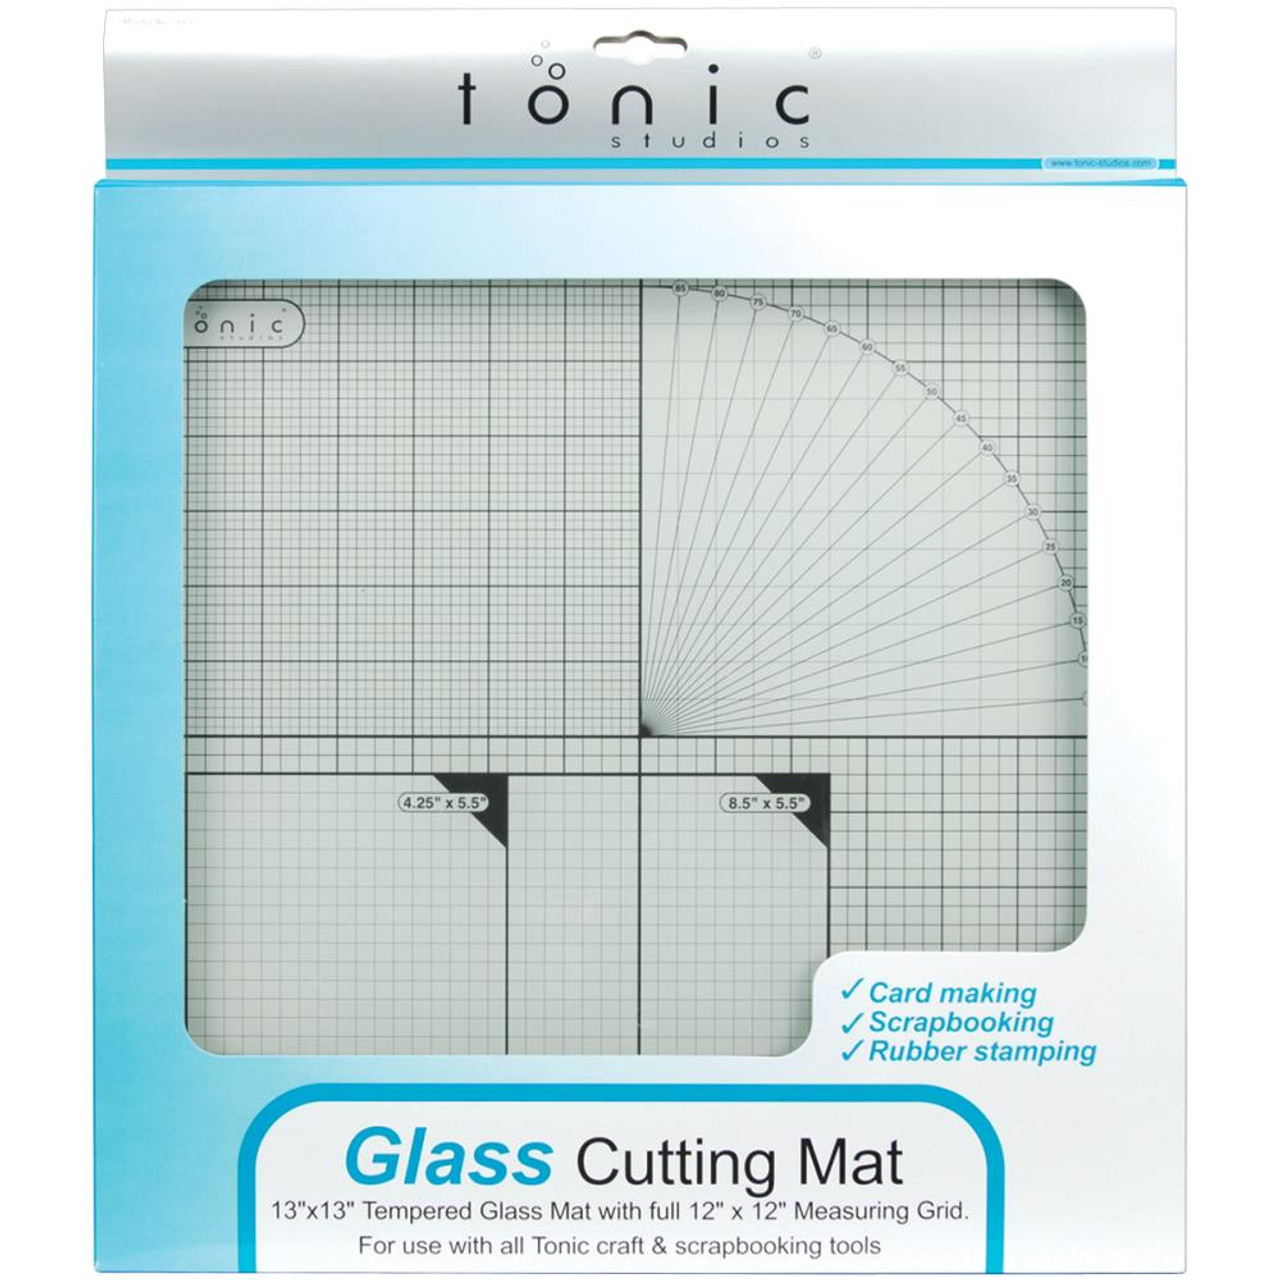 Glass Cutting Mat